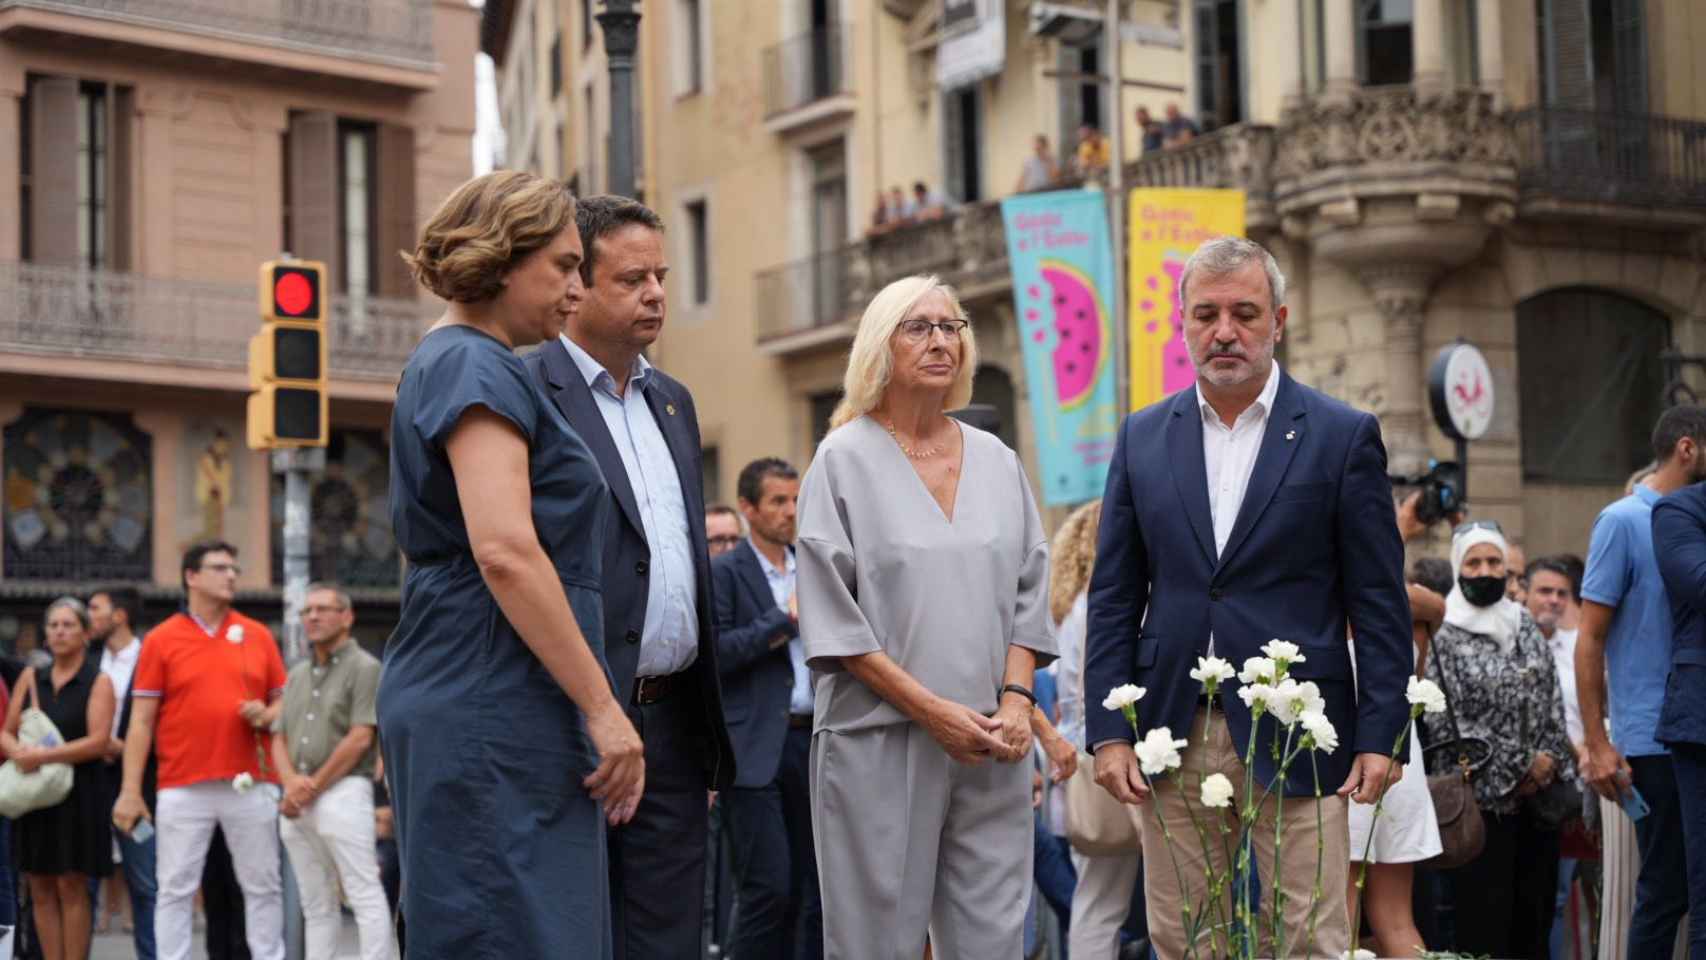 Ada Colau, Jaume Collboni y otros representantes políticos en el homenaje a las víctimas del atentado de Barcelona / LUIS MIGUEL AÑÓN - MA